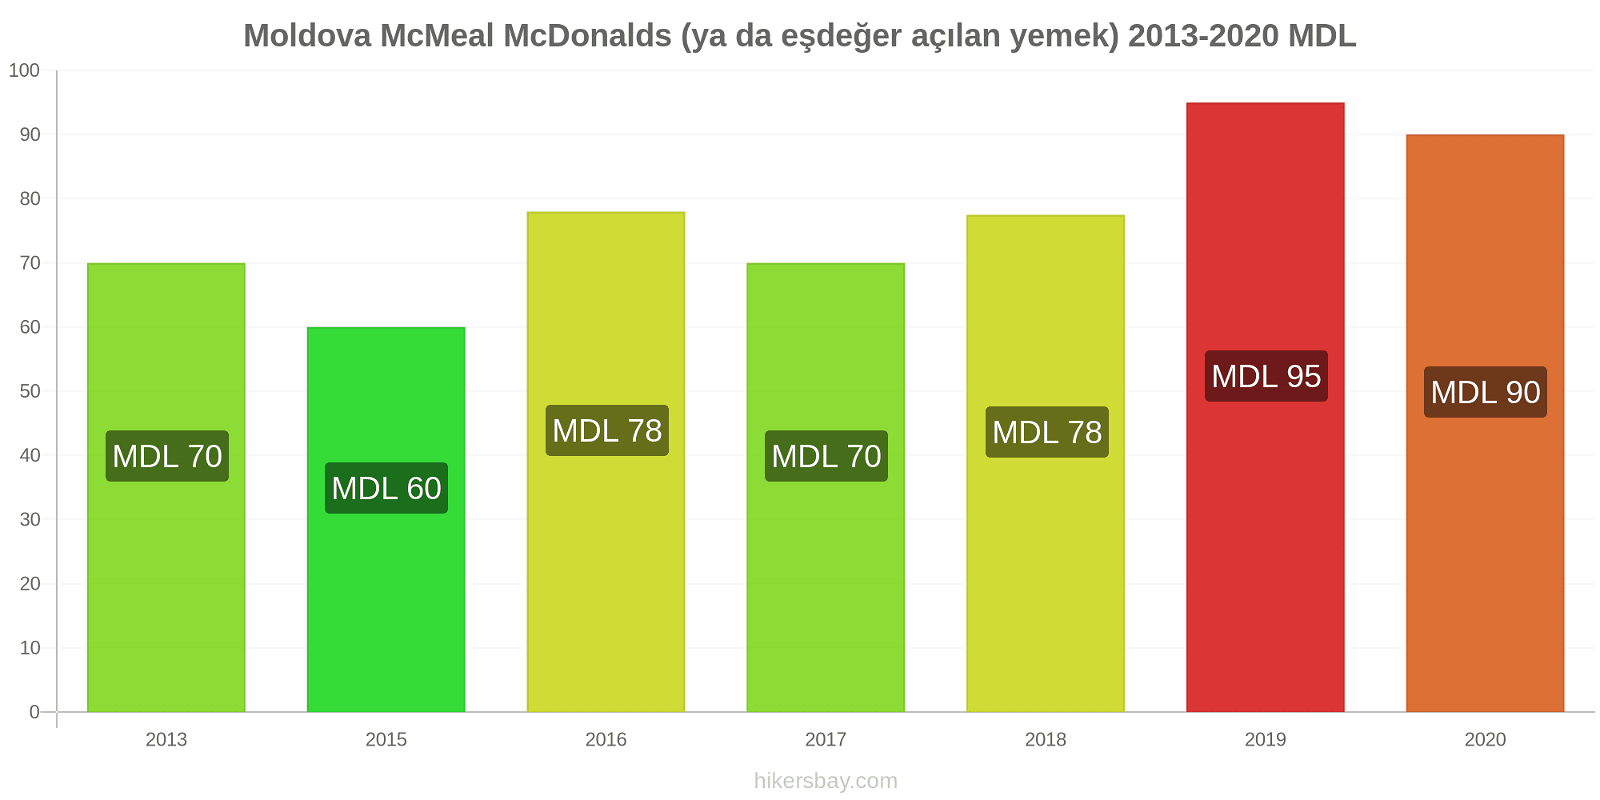 Moldova fiyat değişiklikleri McMeal McDonalds (ya da eşdeğer açılan yemek) hikersbay.com